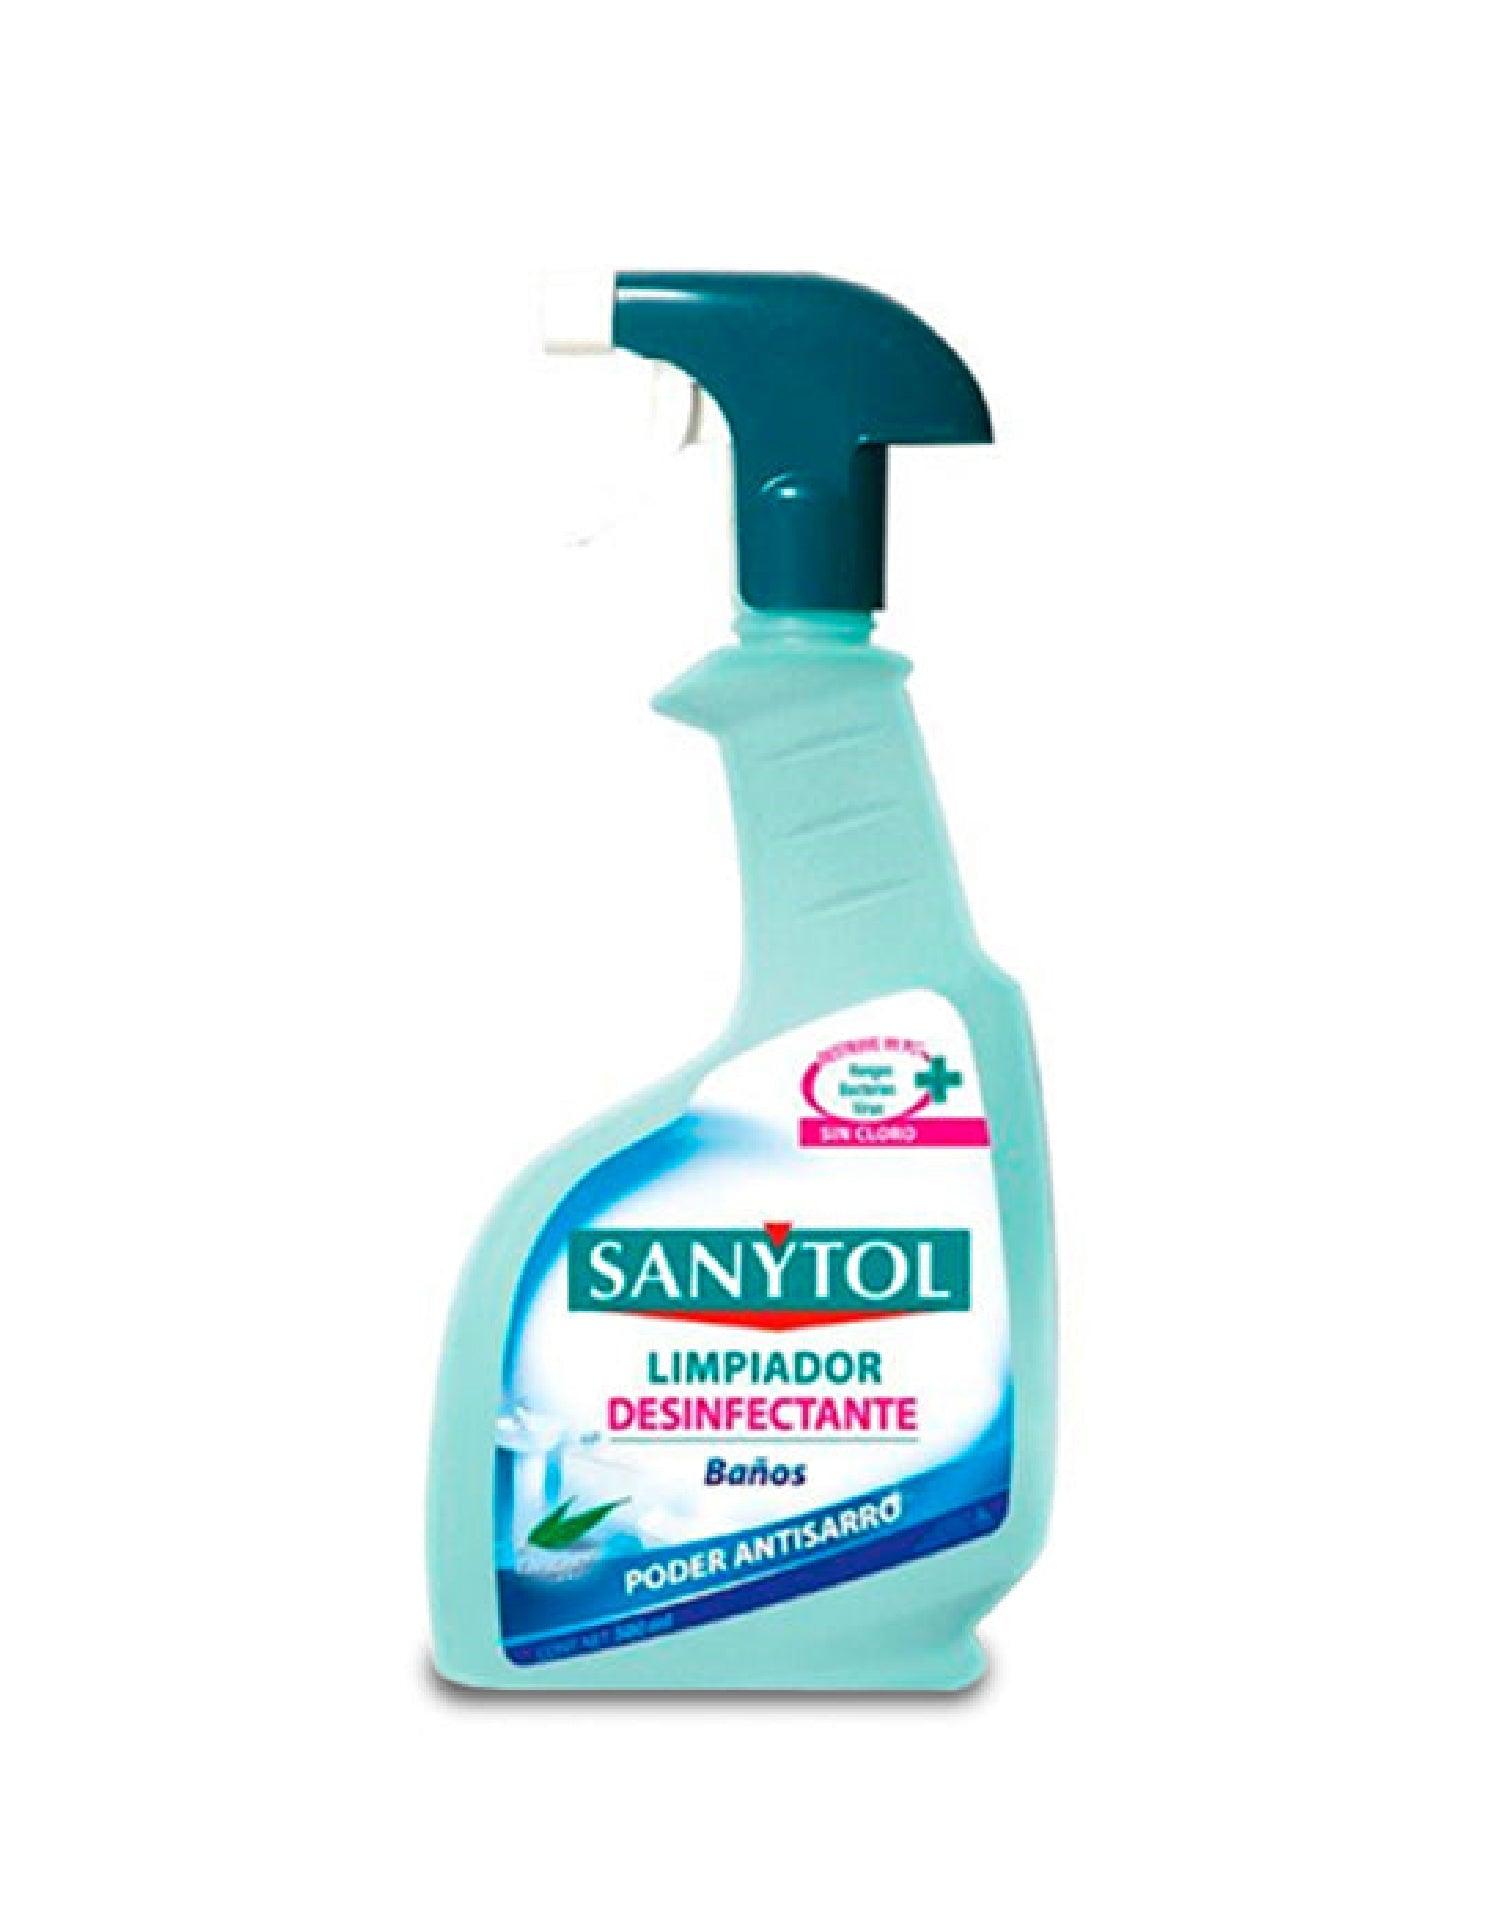 Sanytol - Spray Elimina Olores - envase de 500 ml